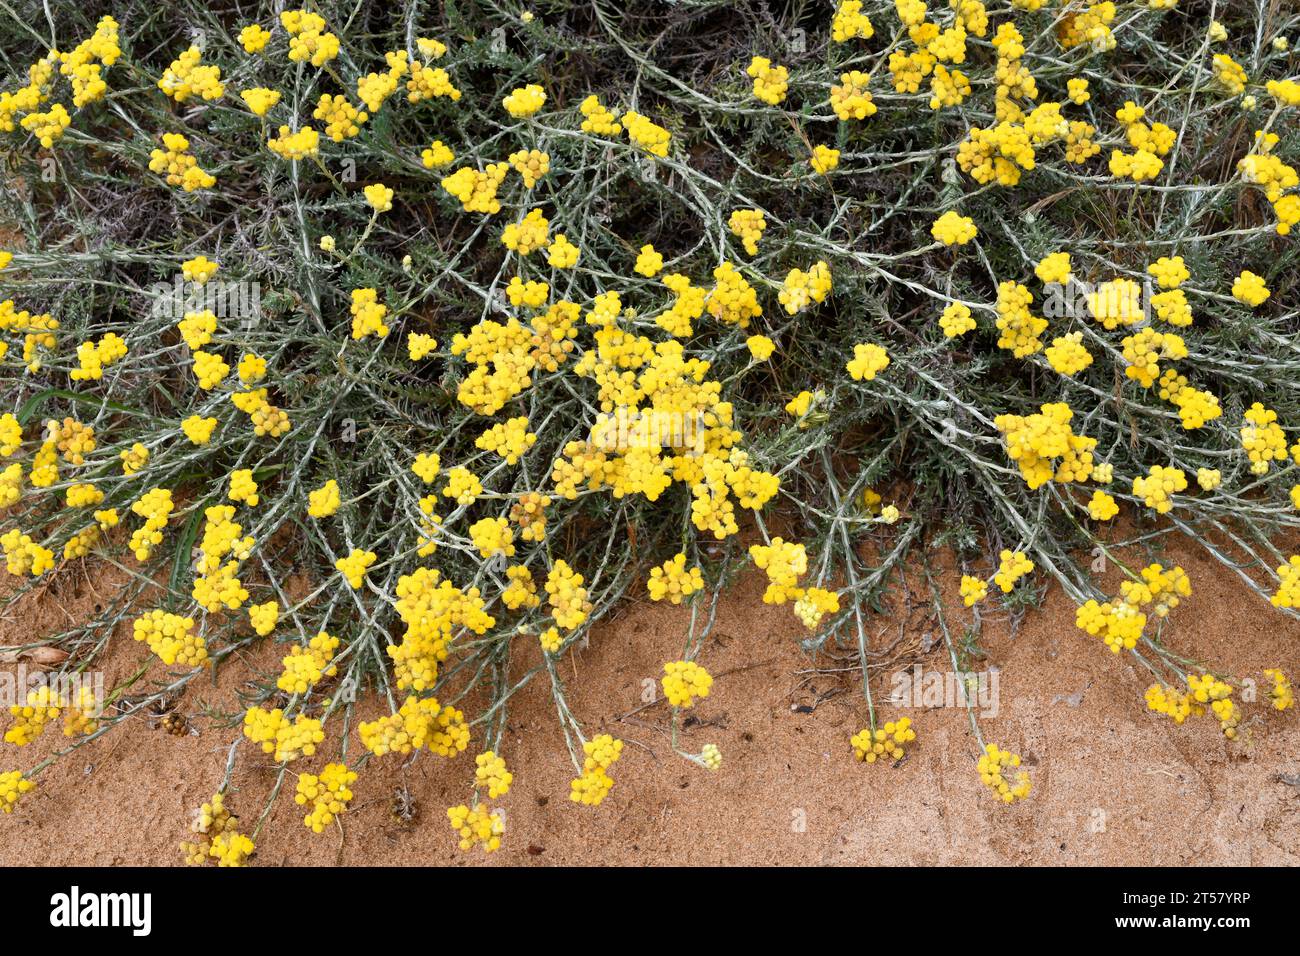 Il fiocco di fragola mediterraneo (Helichrysum stoechas) è una pianta annuale o perenne originaria delle coste sabbiose del bacino del Mediterraneo. Questa foto mi è stata fatta Foto Stock